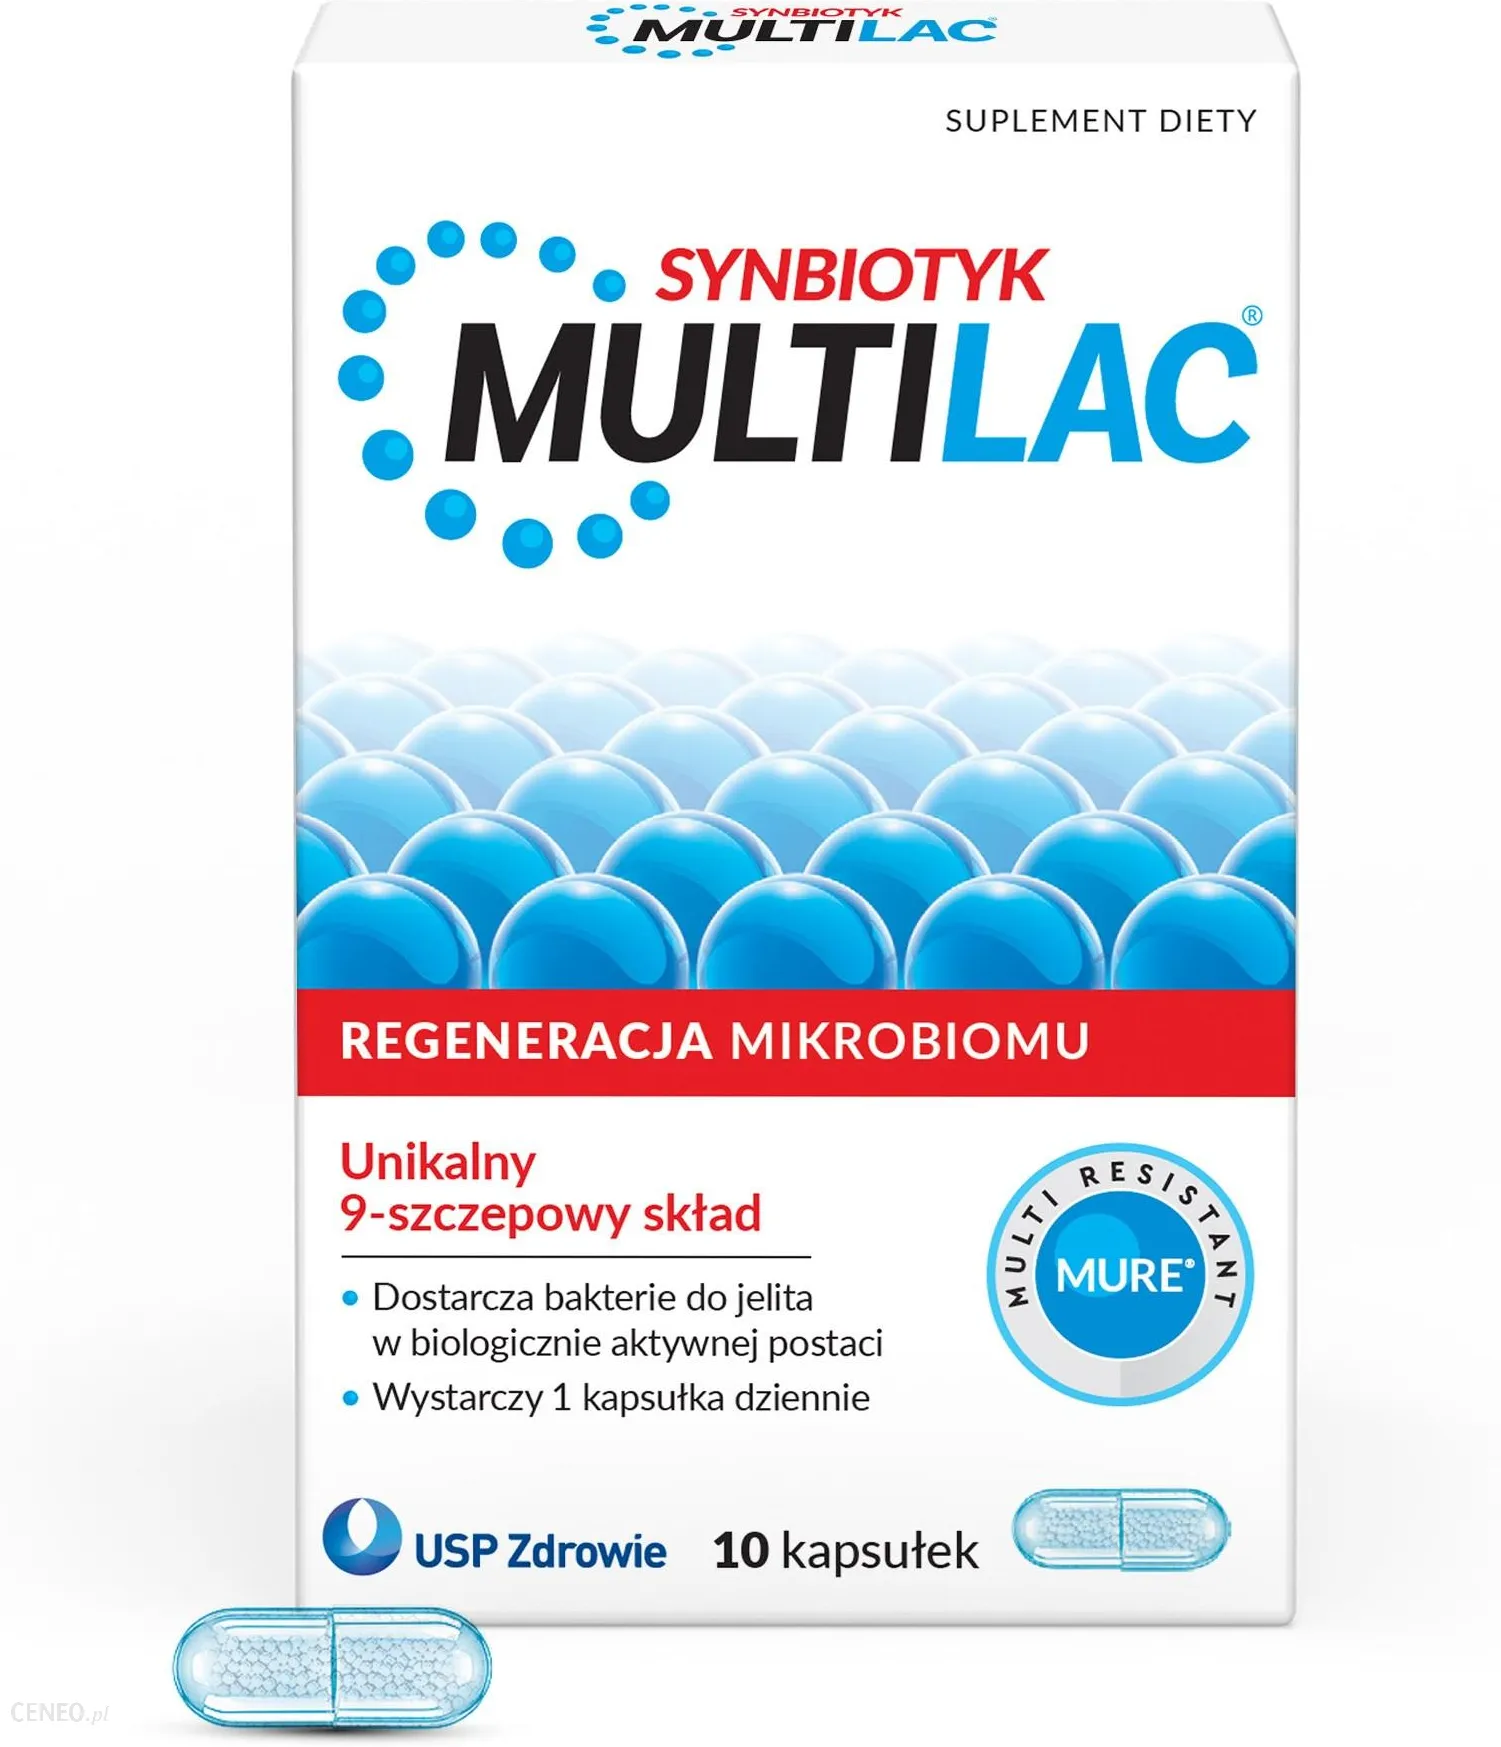 Multilac synbiotic